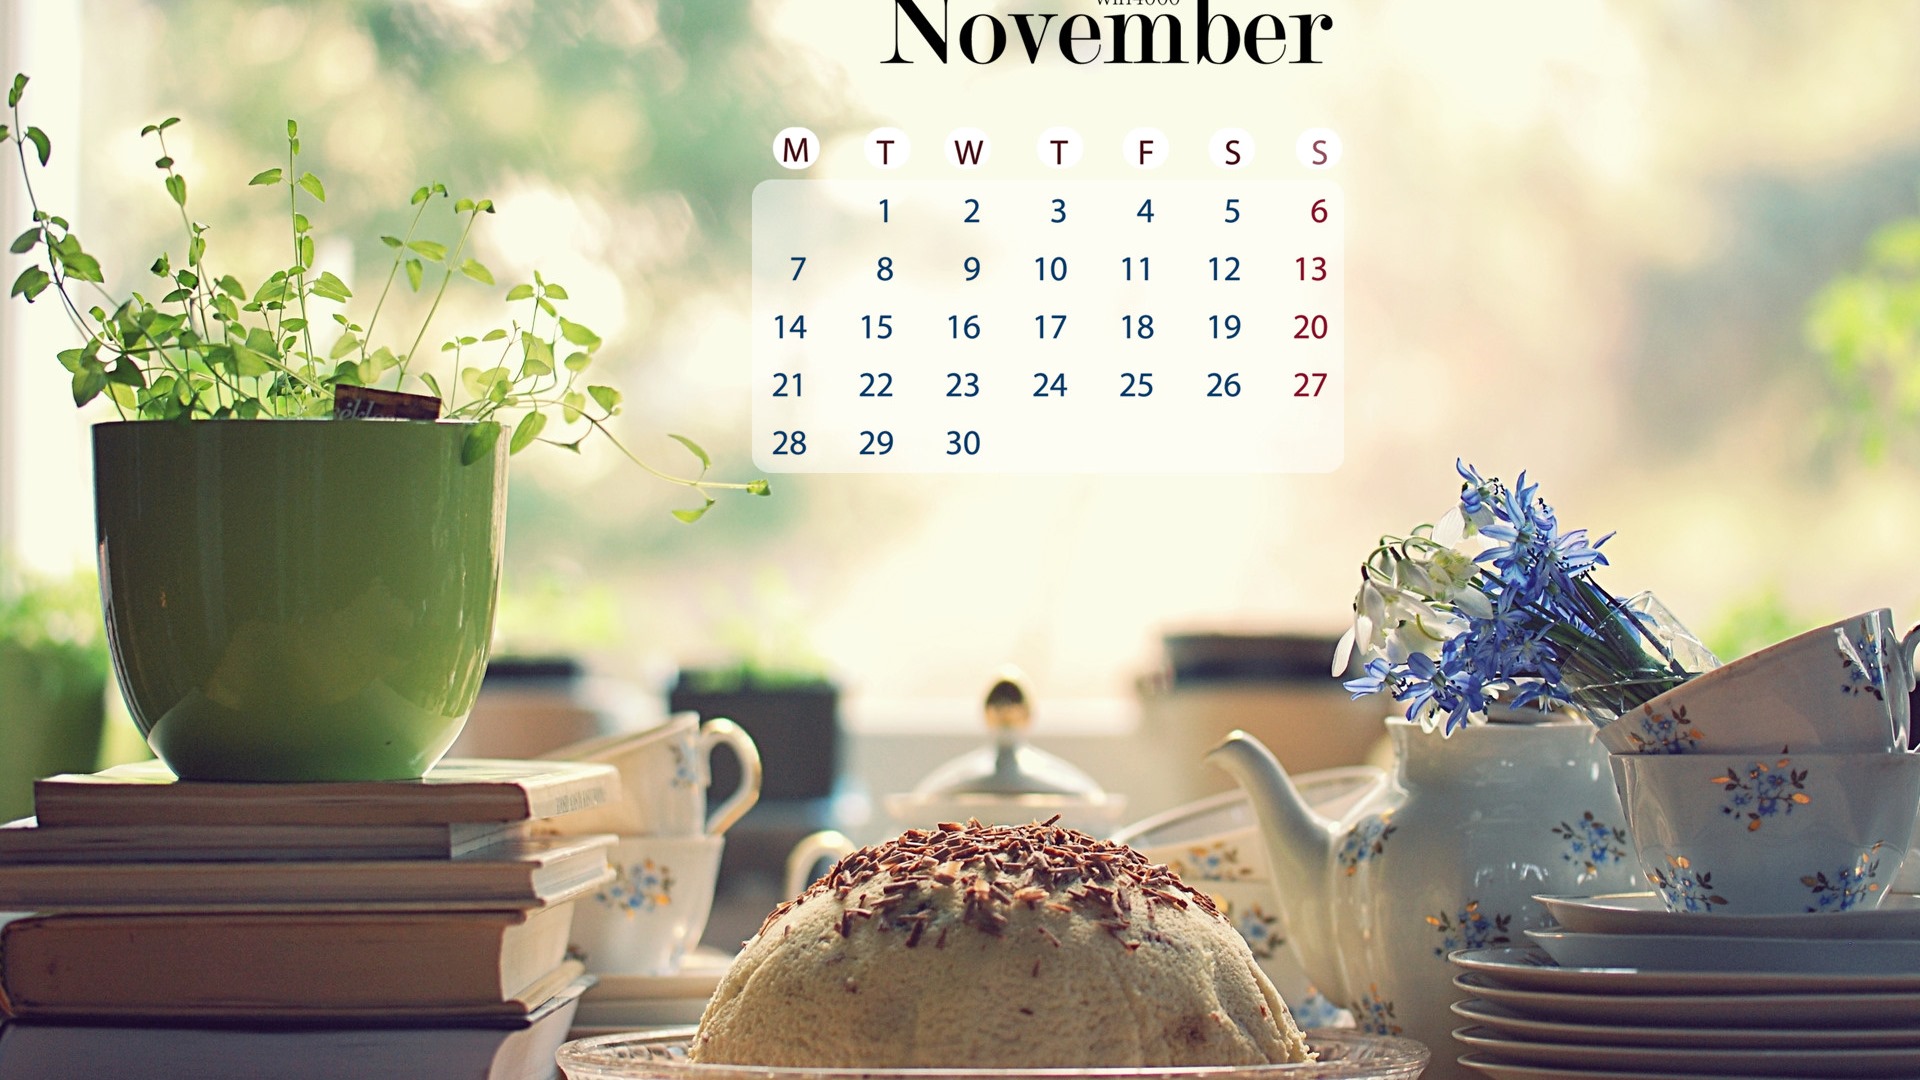 Fond d'écran calendrier Novembre 2016 (1) #18 - 1920x1080